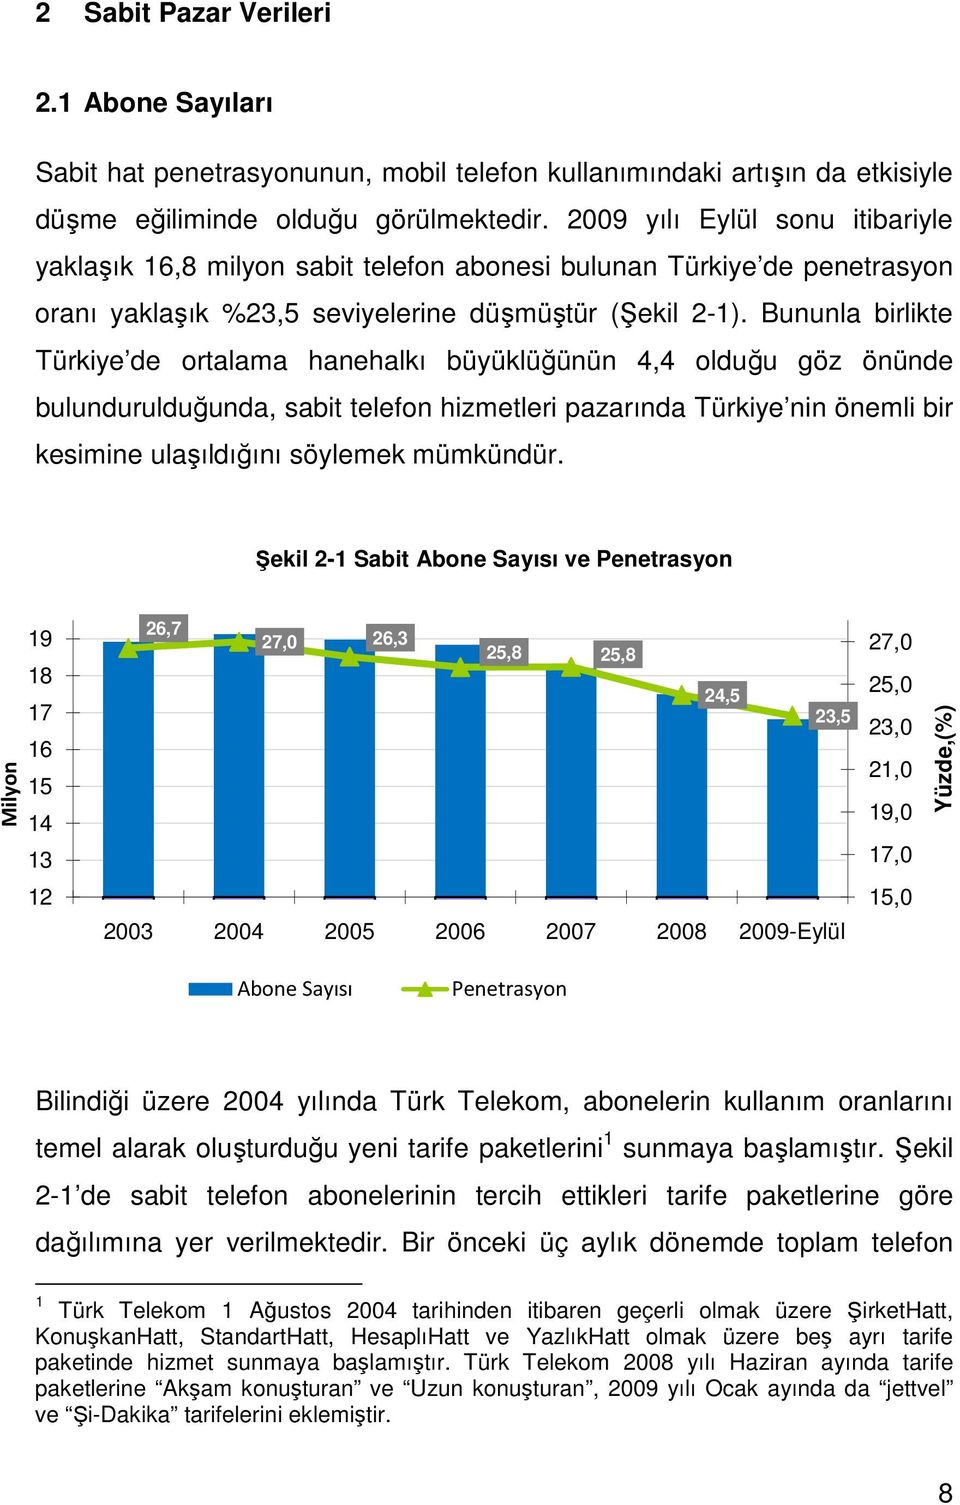 Bununla birlikte Türkiye de ortalama hanehalkı büyüklüğünün 4,4 olduğu göz önünde bulundurulduğunda, sabit telefon hizmetleri pazarında Türkiye nin önemli bir kesimine ulaşıldığını söylemek mümkündür.